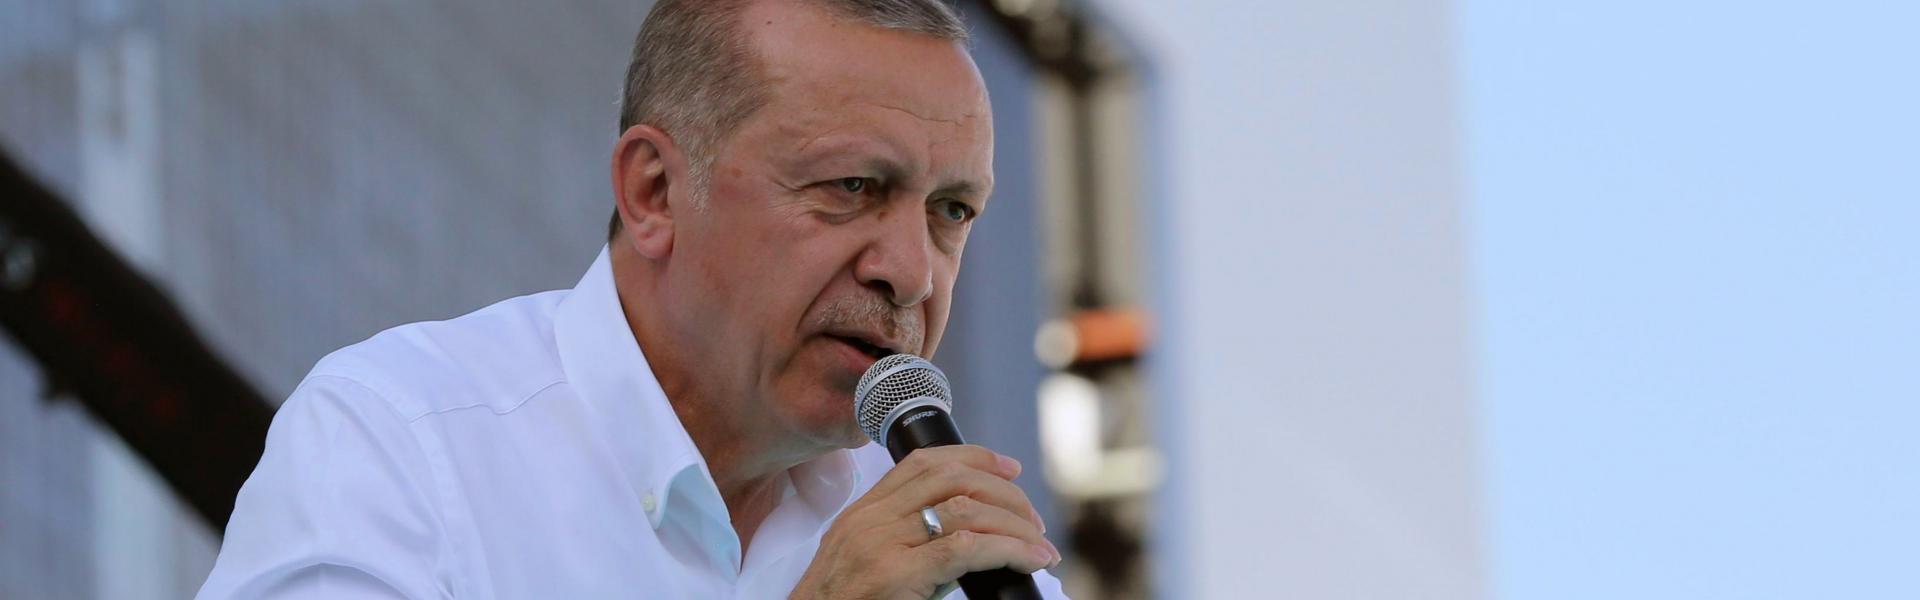 Erdoğan'ın yeni videosu sızdı